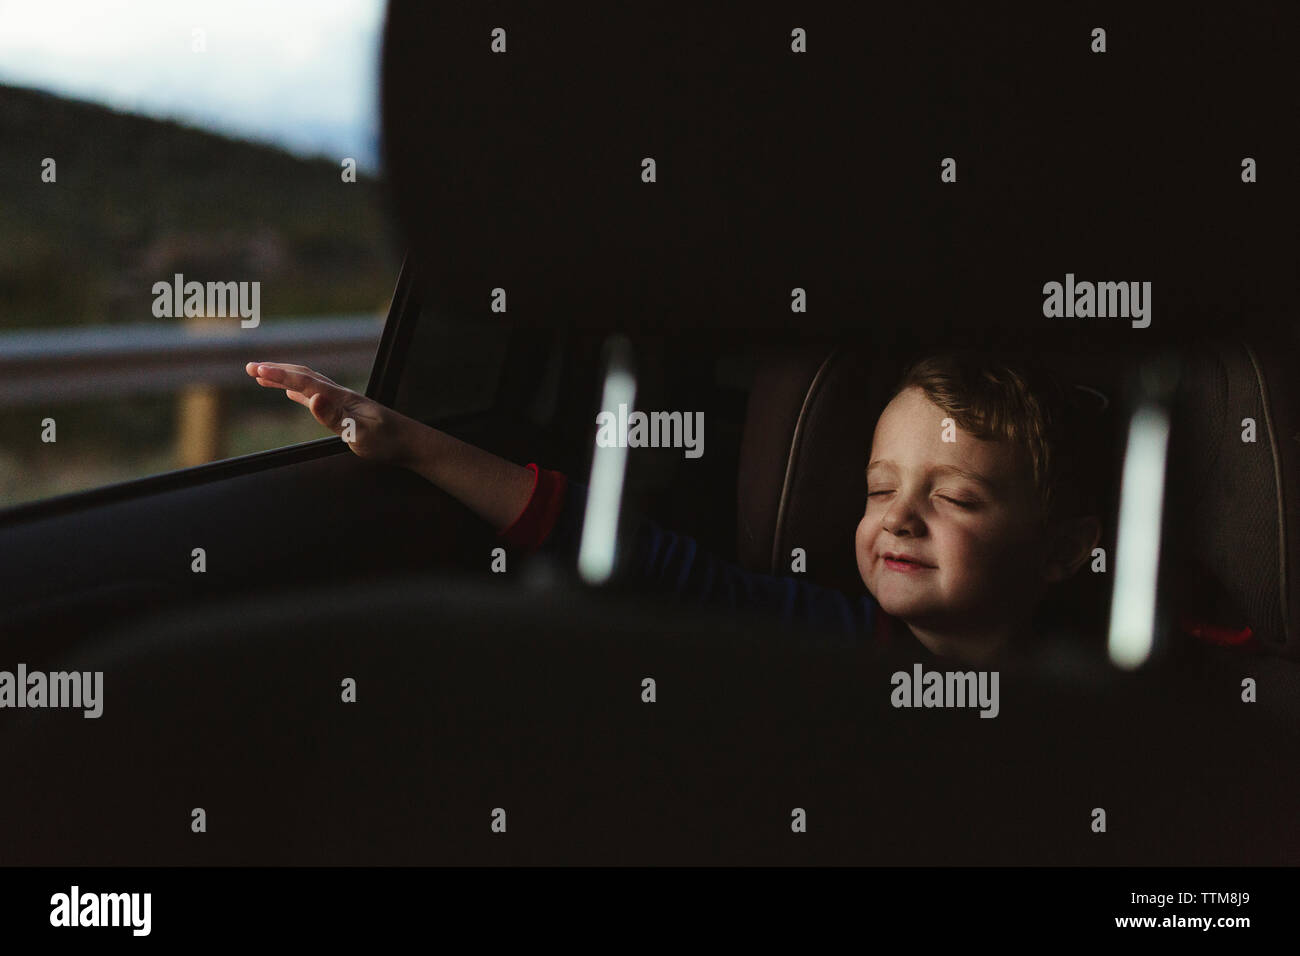 Chico lindo con los ojos cerrados disfrutando de road trip vistos a través de asiento del vehículo. Foto de stock